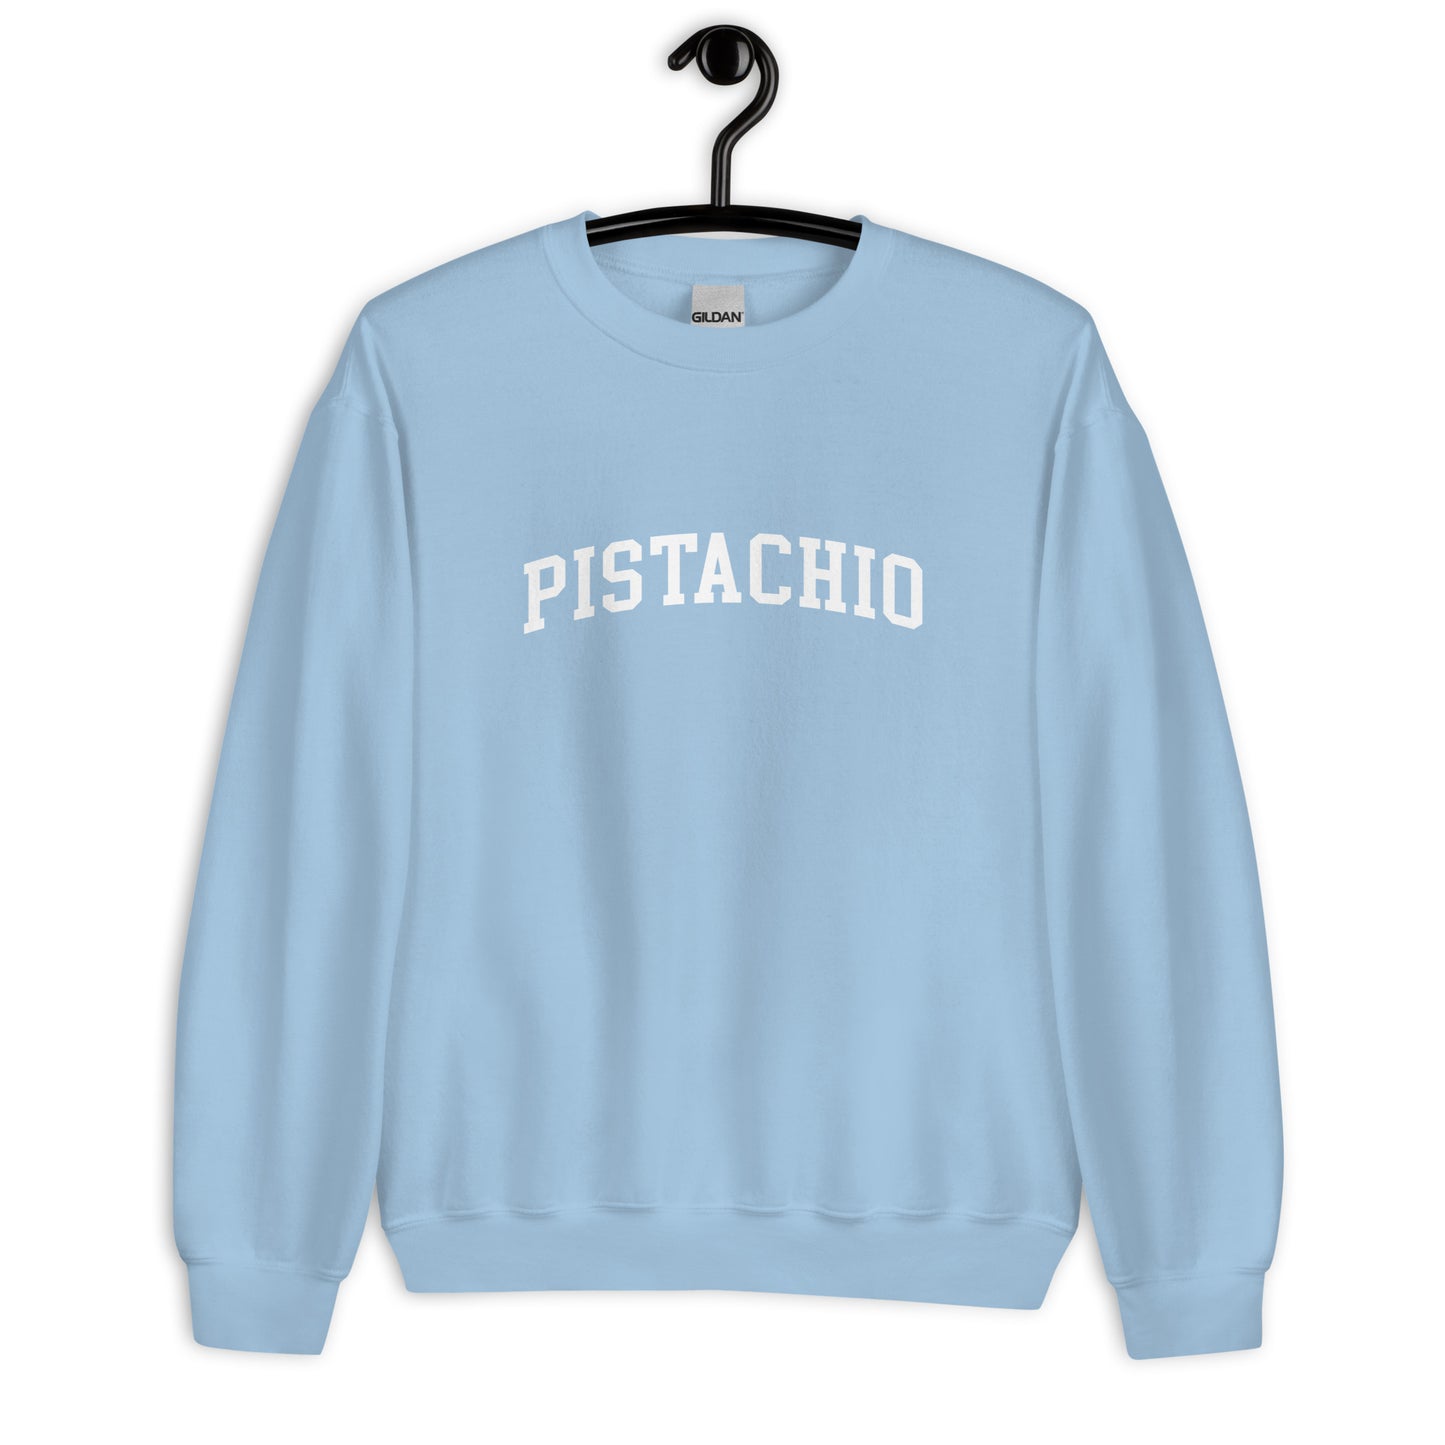 Pistachio Sweatshirt - Arched Font